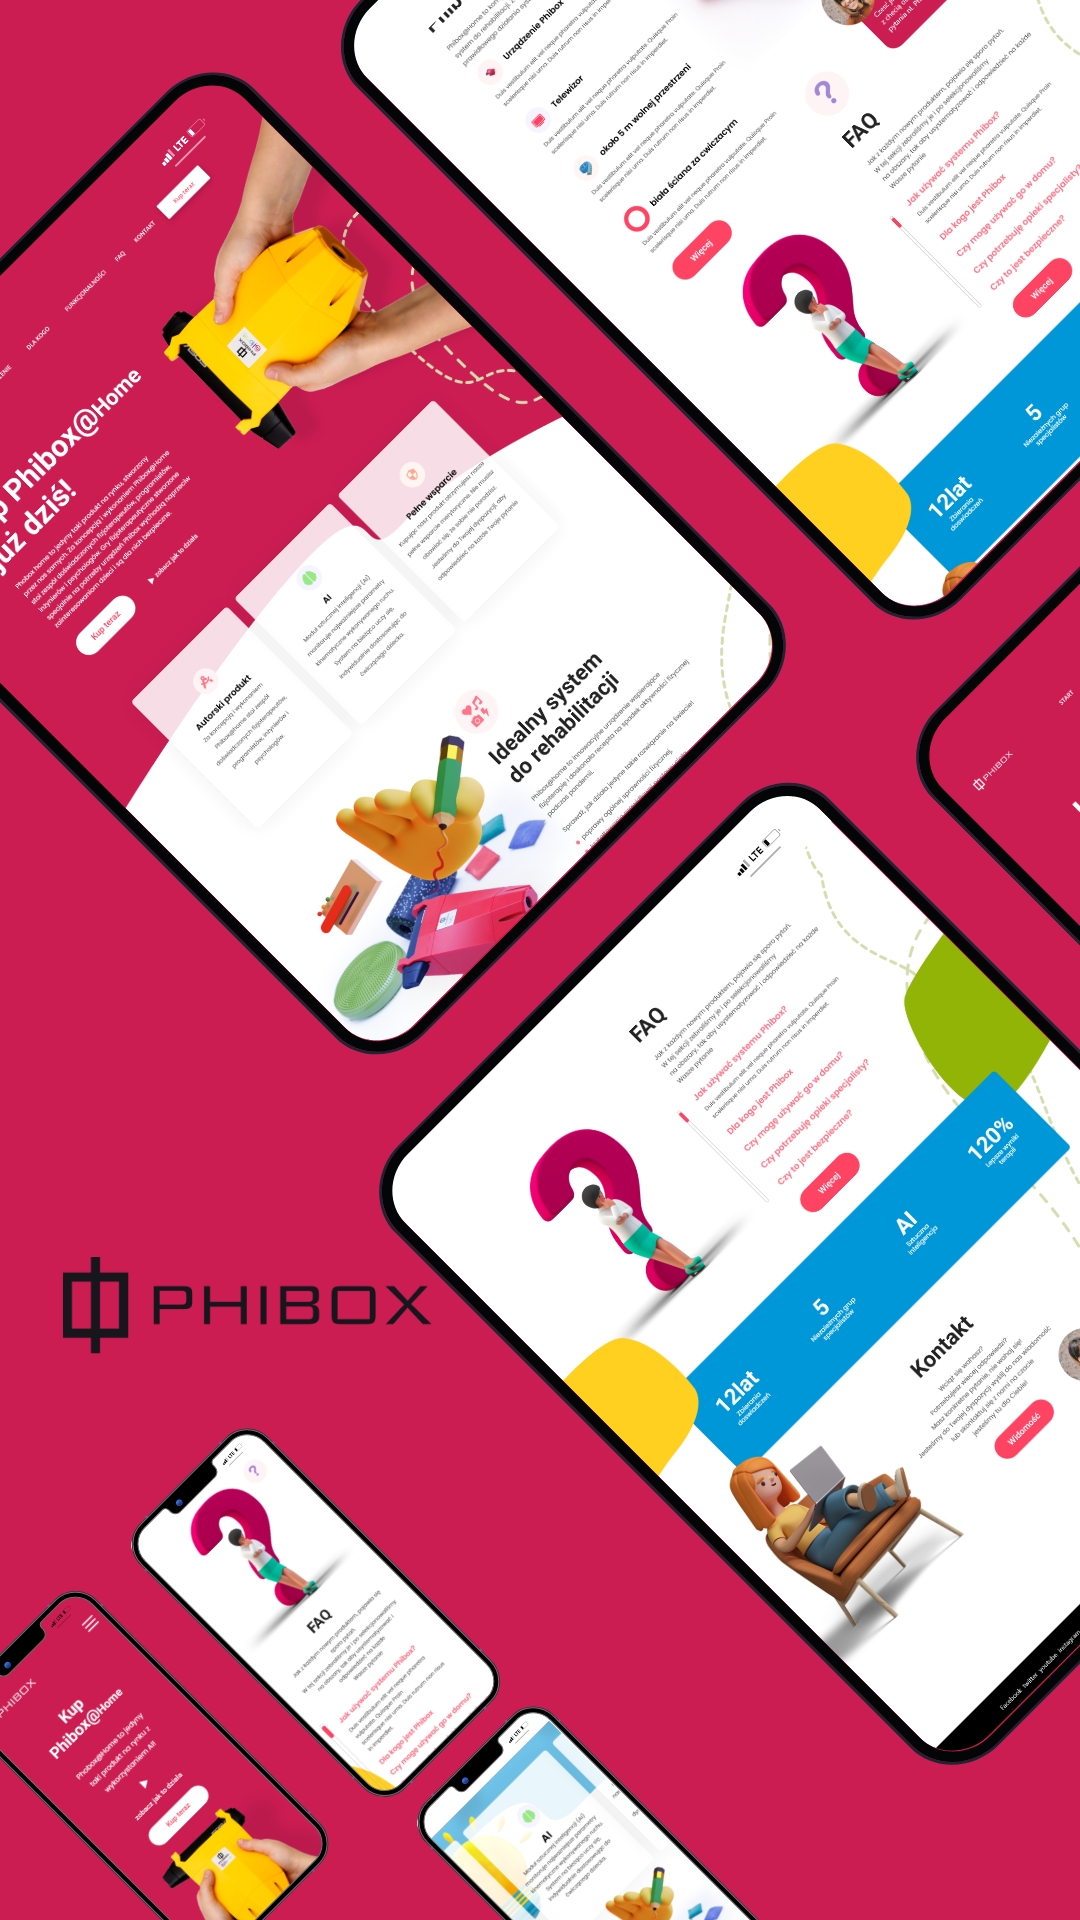 UI design for Phibox